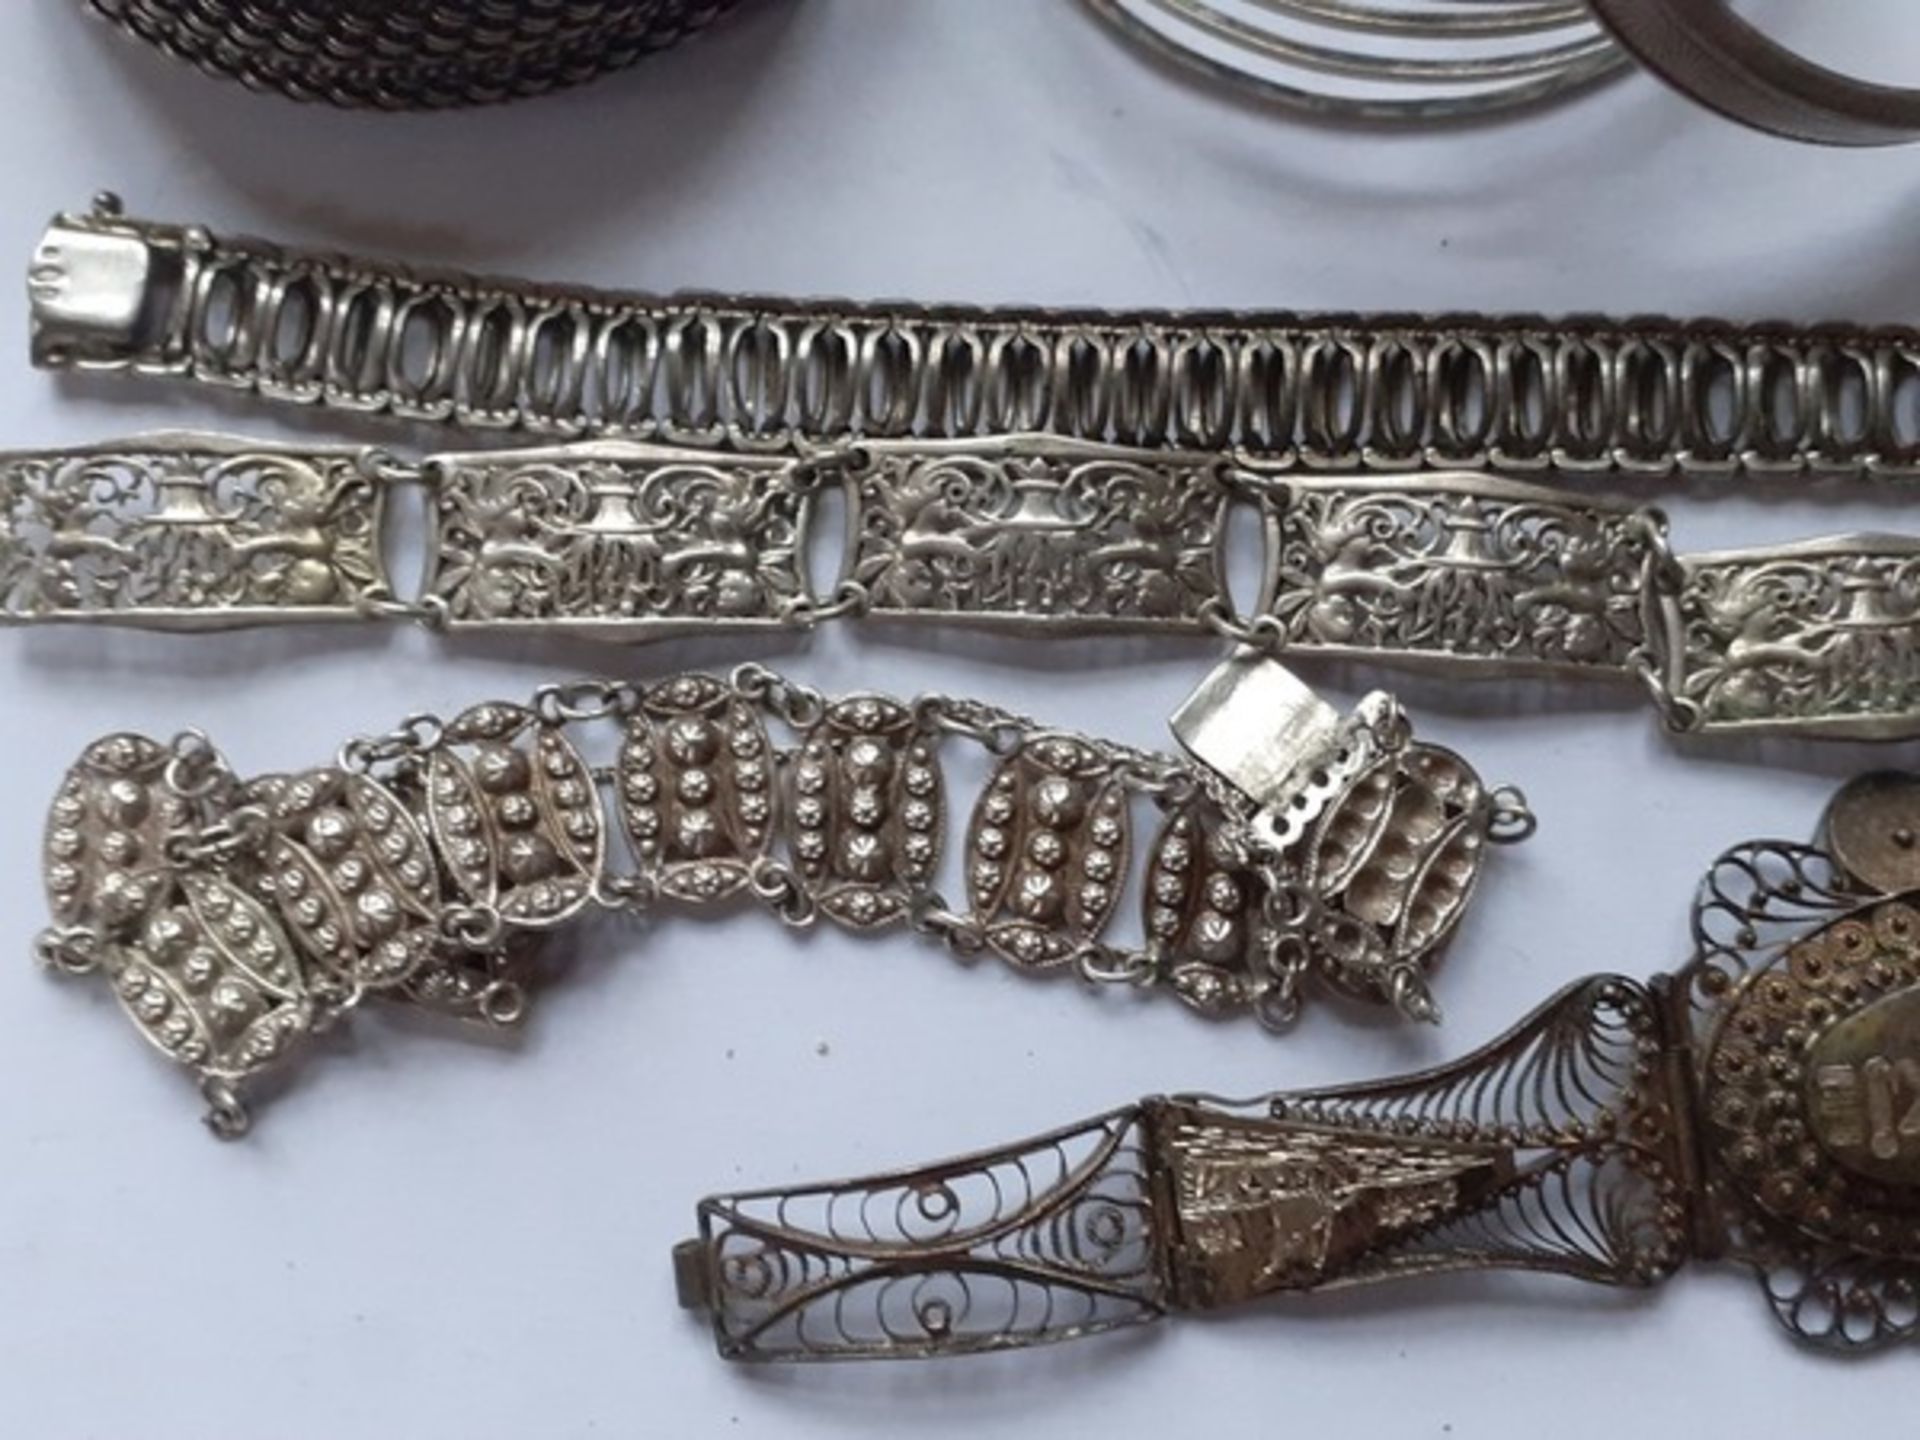 (Zilver) Zilveren armbandenDivers zilveren armbanden. Conditie: Deels beschadigd. - Bild 2 aus 5